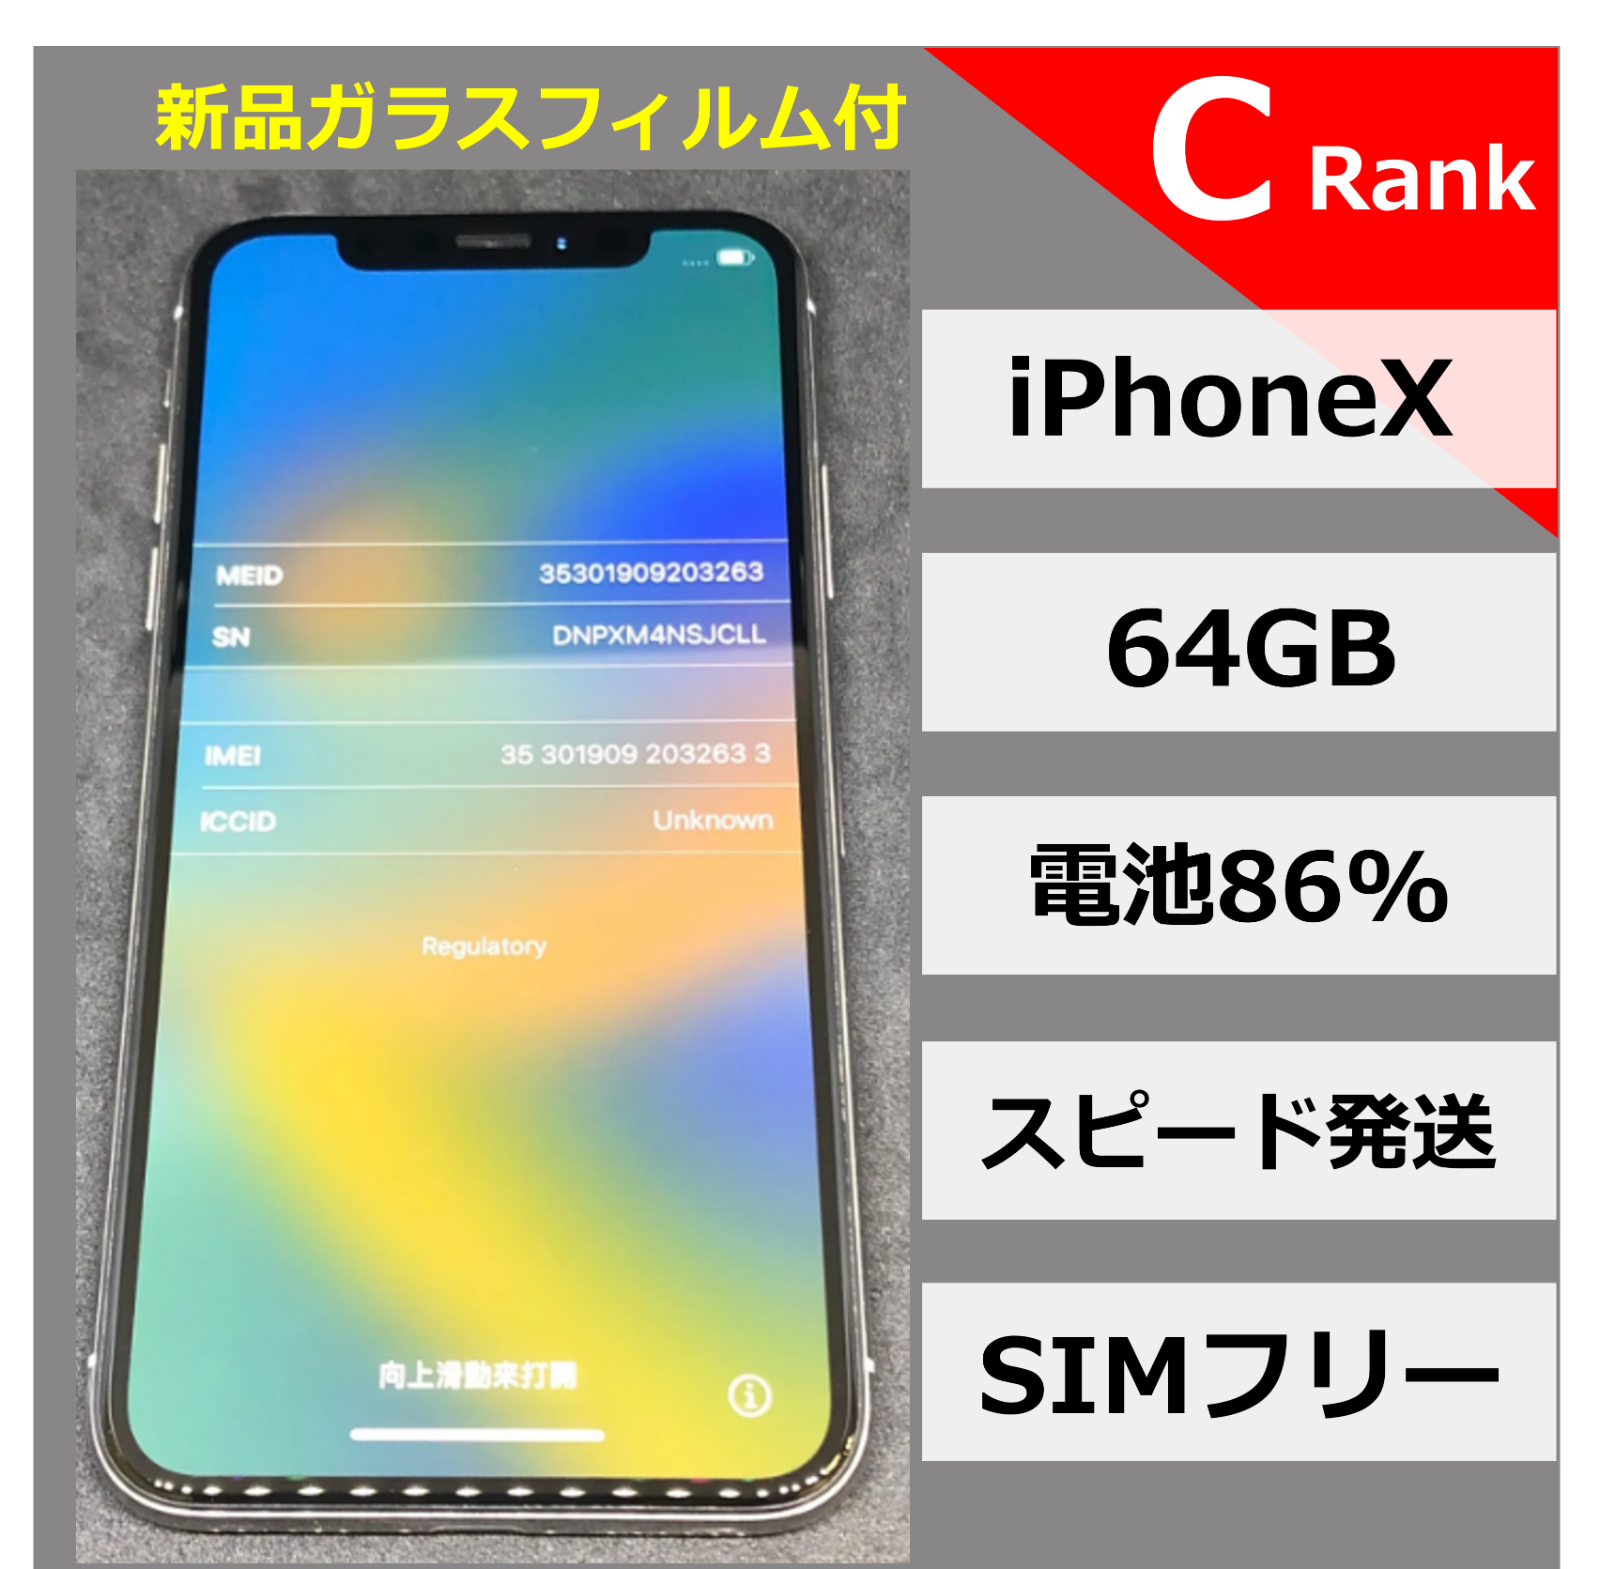 iPhoneX 64GB シルバー【No032633】-0